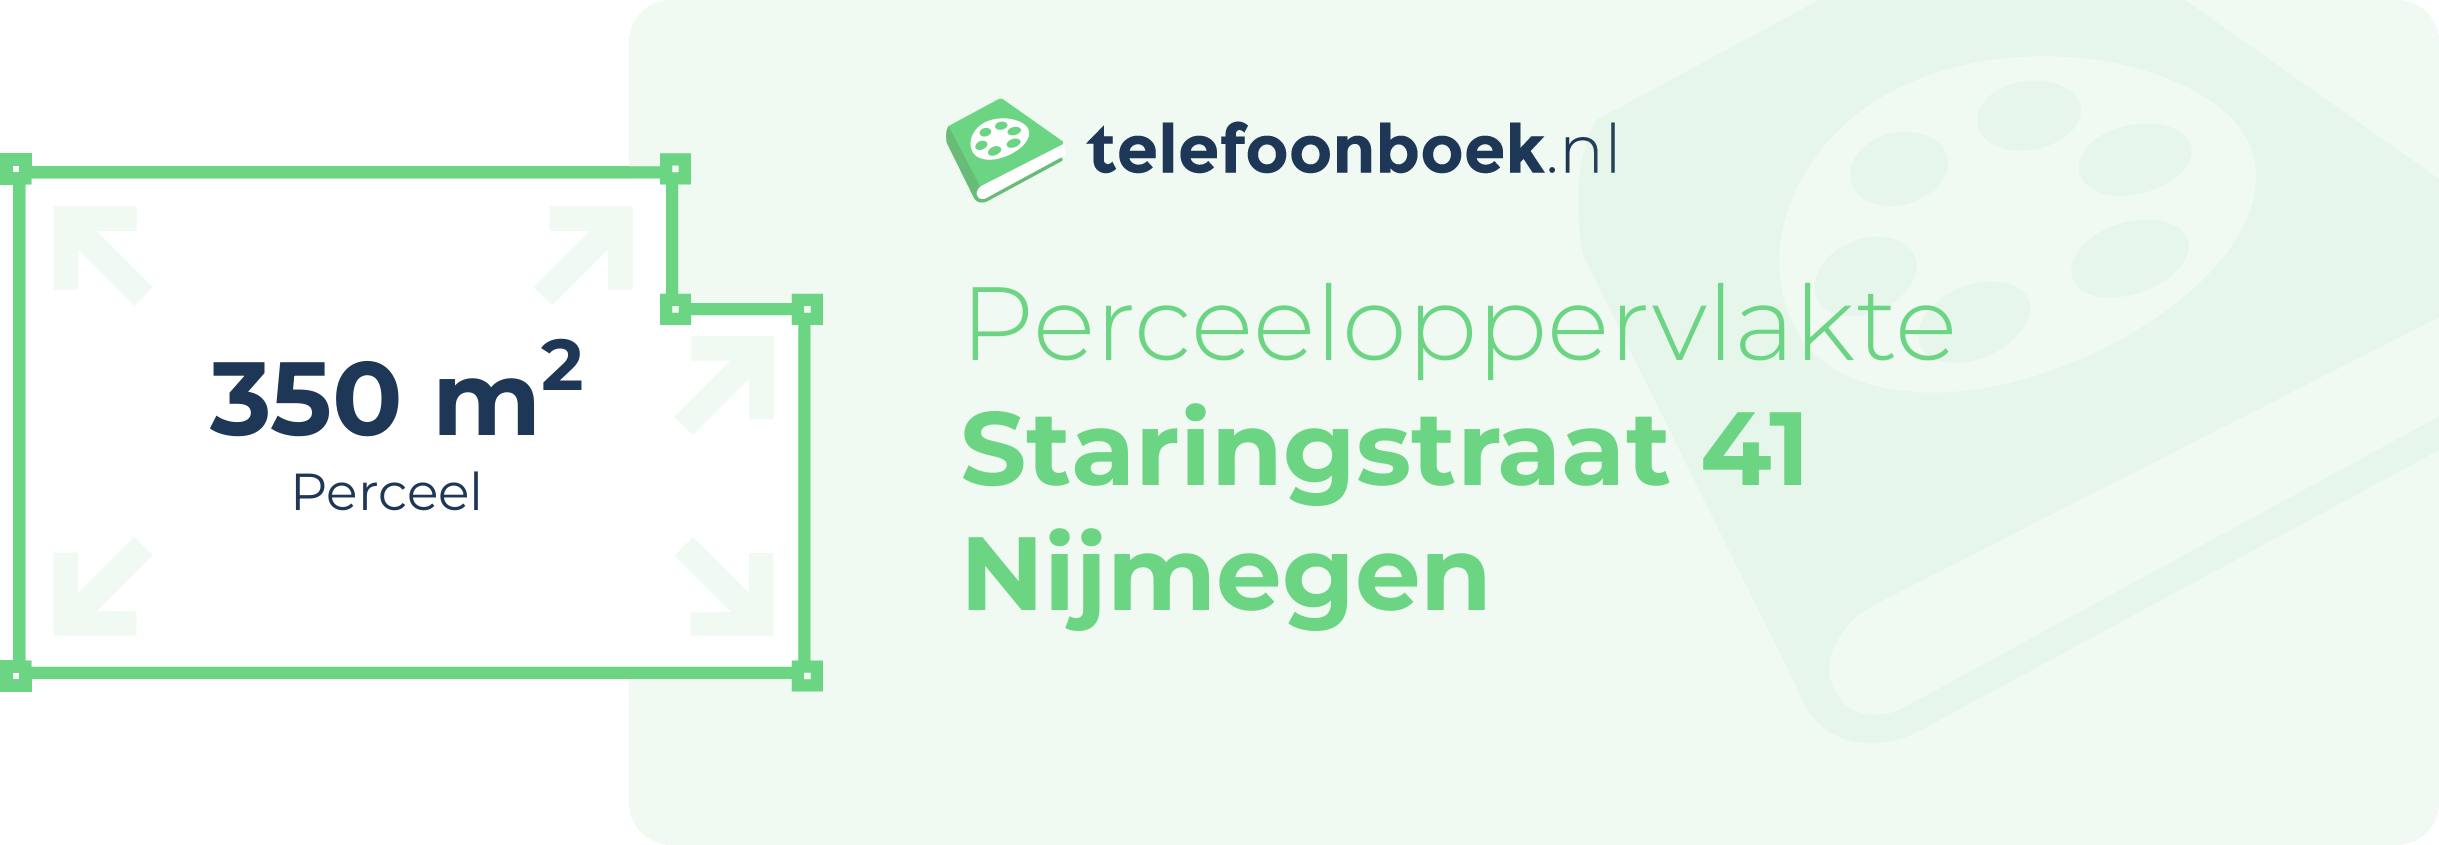 Perceeloppervlakte Staringstraat 41 Nijmegen